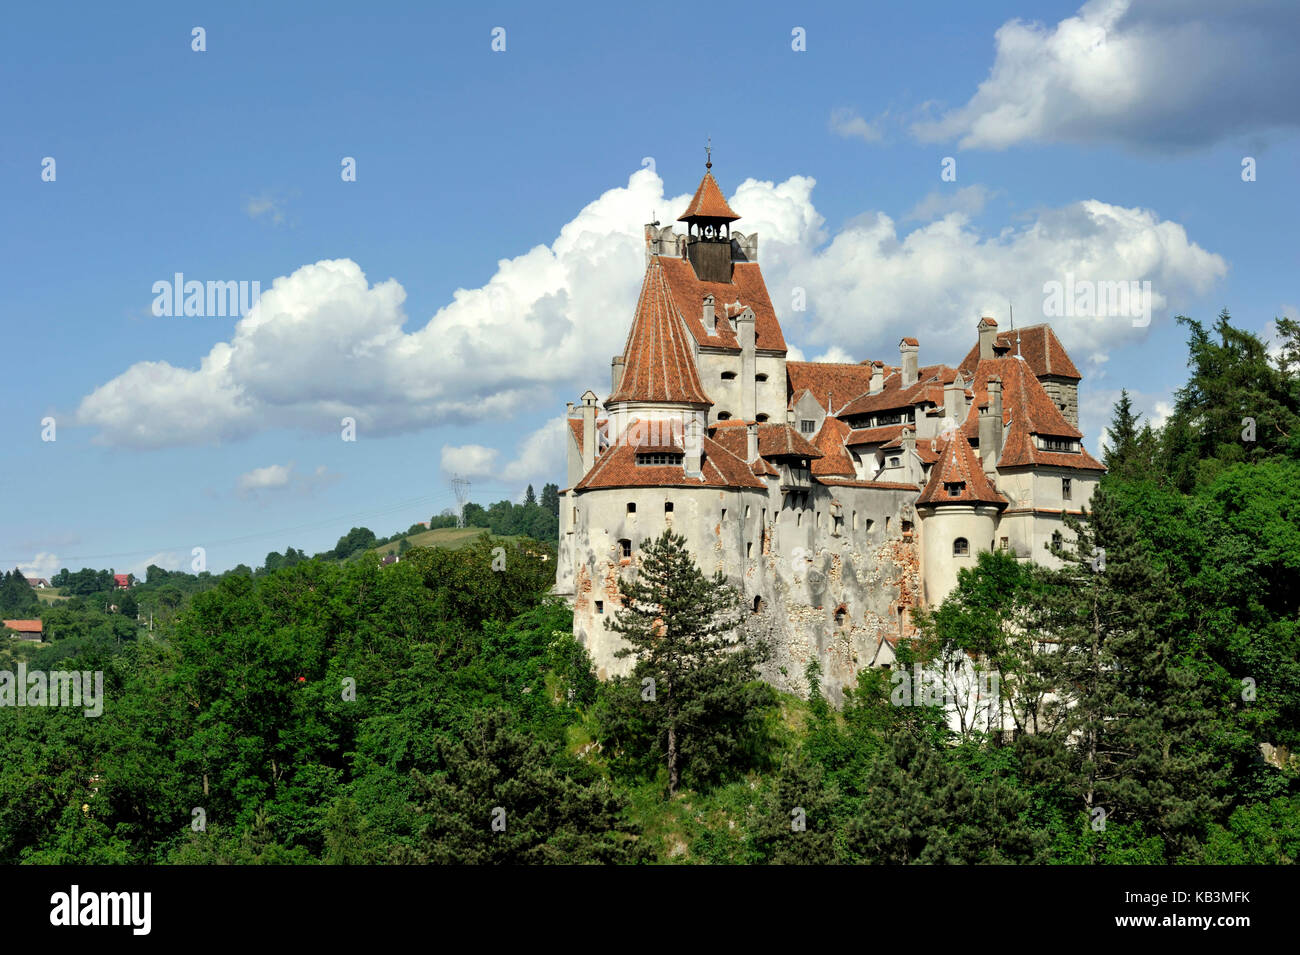 La Roumanie, la Transylvanie, les Carpates, le son, le premier château a été construit par les chevaliers teutoniques au xiiie siècle pour le contrôle passe des Carpates et protéger la Transylvanie Banque D'Images